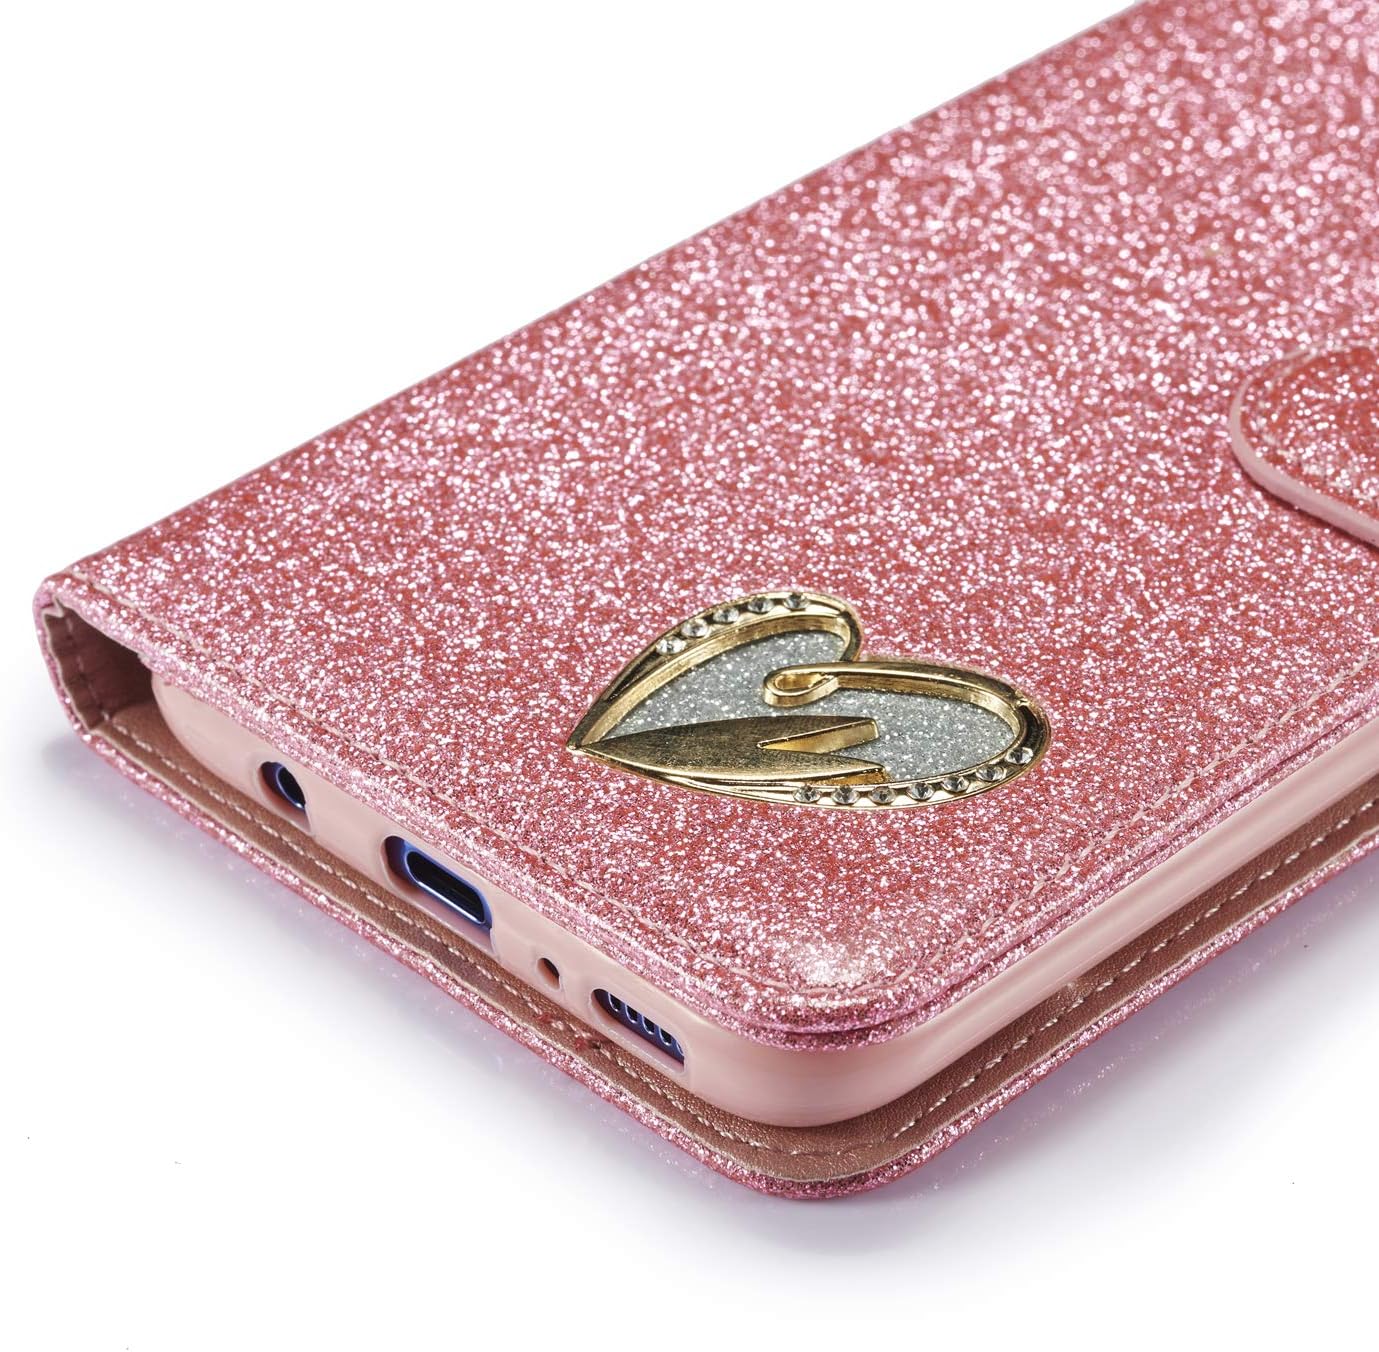 Leren portemonnee-hoesje met glitter voor iPhone, wit